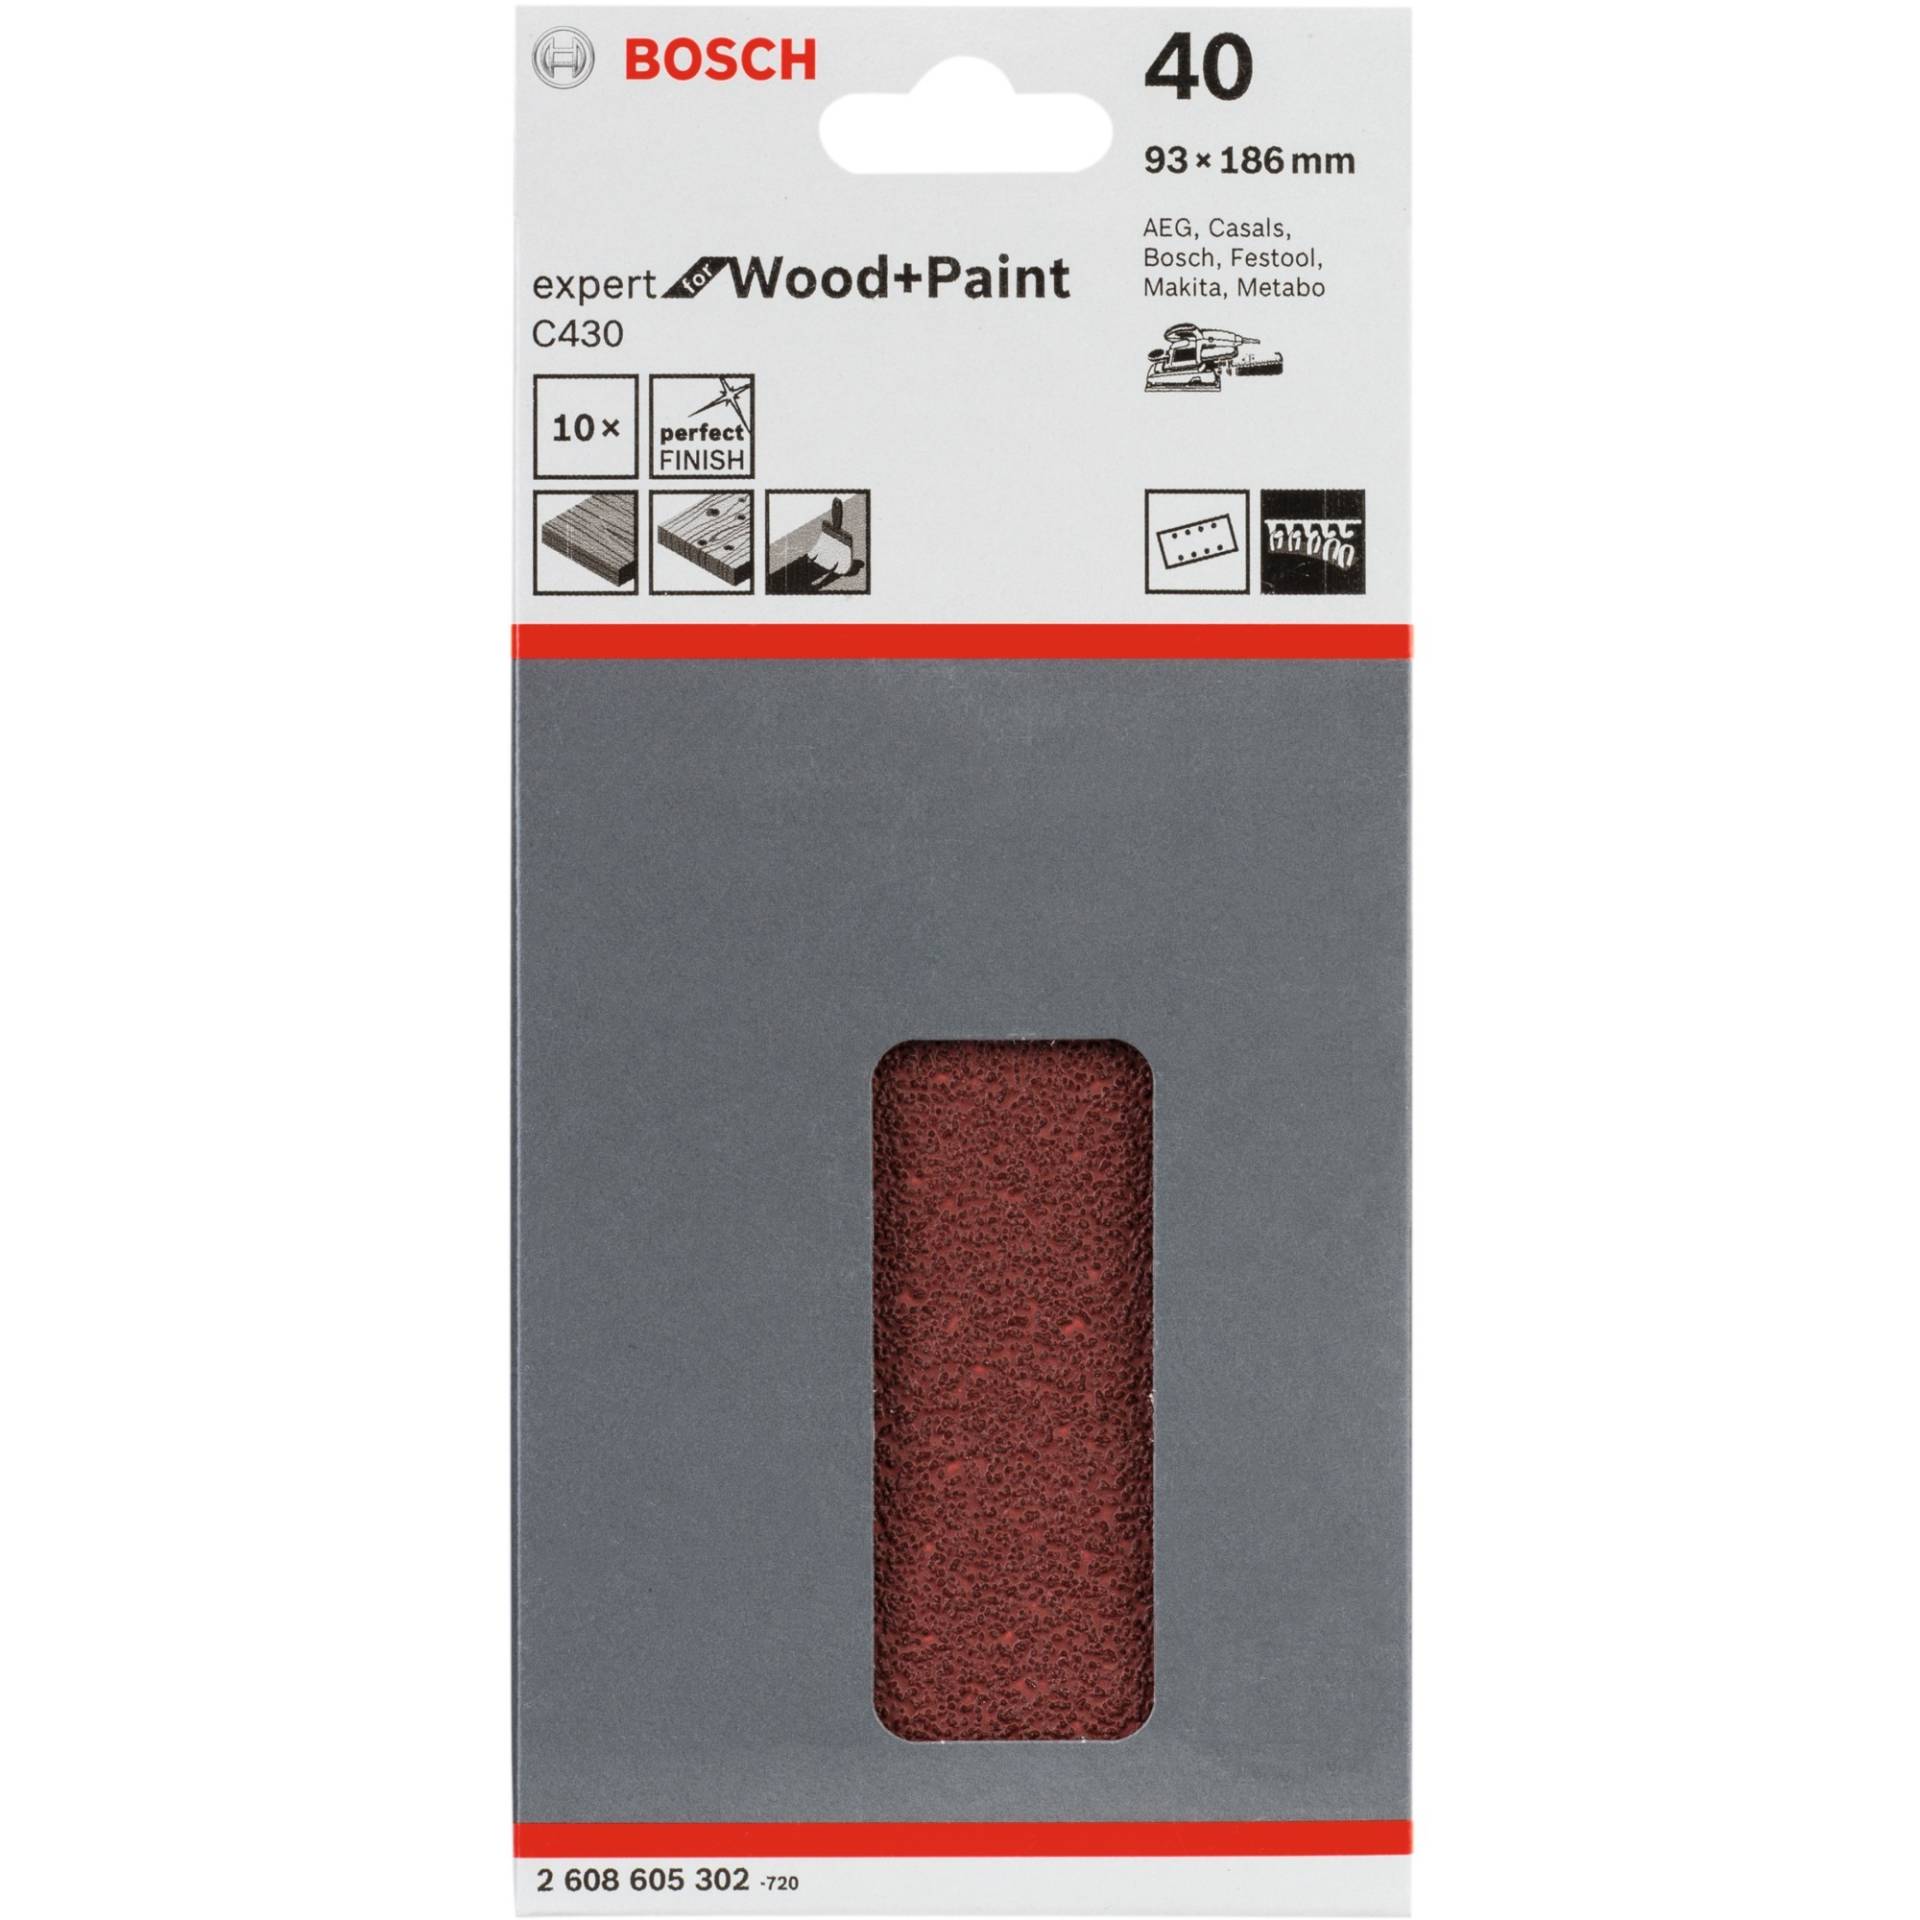 Schleifblatt C430 Expert for Wood and Paint, 93x186mm, K40 von Bosch